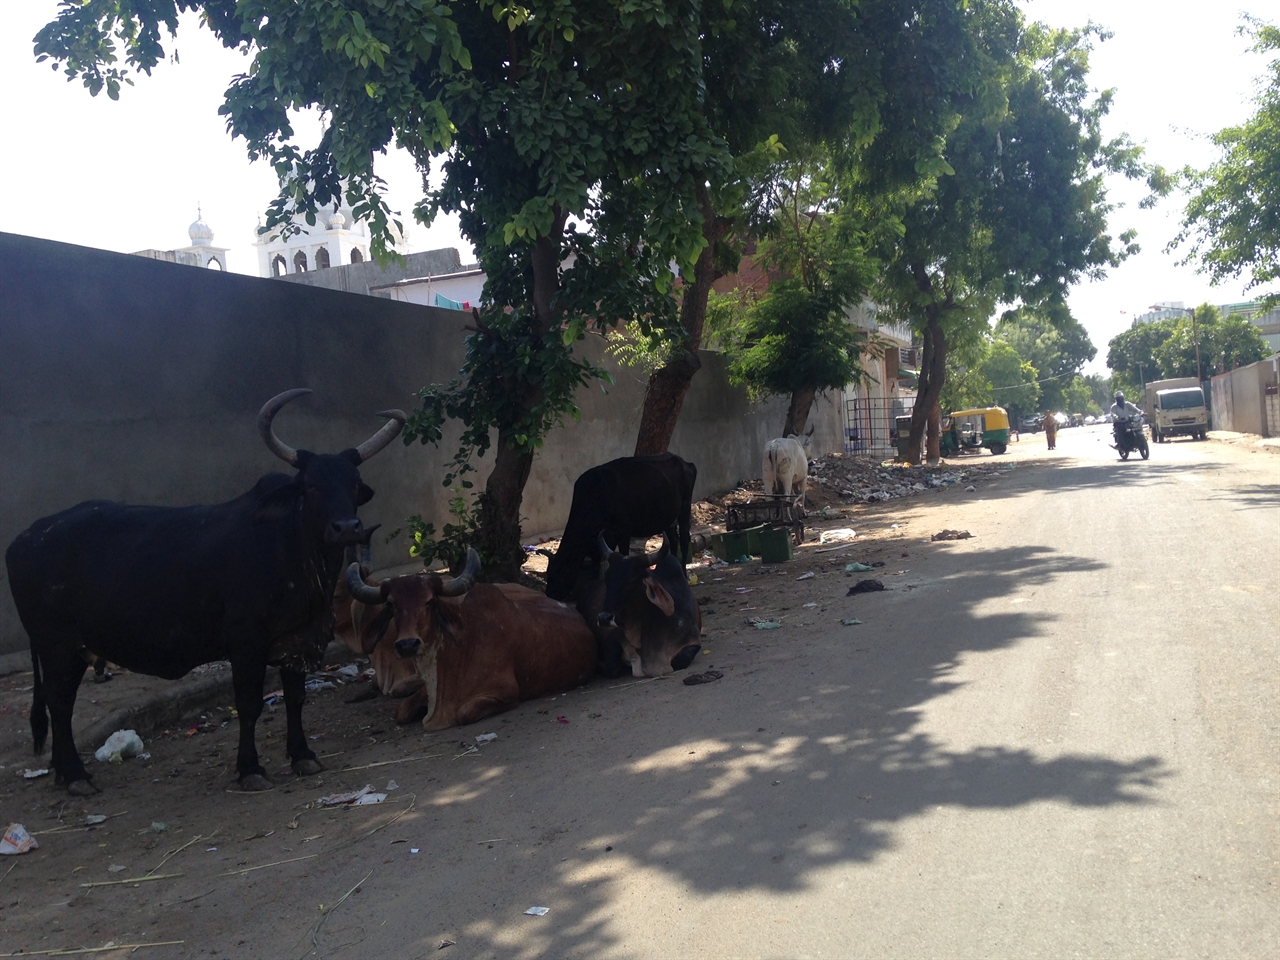 아마다바드에서의 마지막 산책길. 길거리에 방생된 소들이 유독 많았다. 쓰레기 더미에서 음식을 찾는 소들은 저렇게 병들어 죽어가는 경우가 많다고 한다. 
